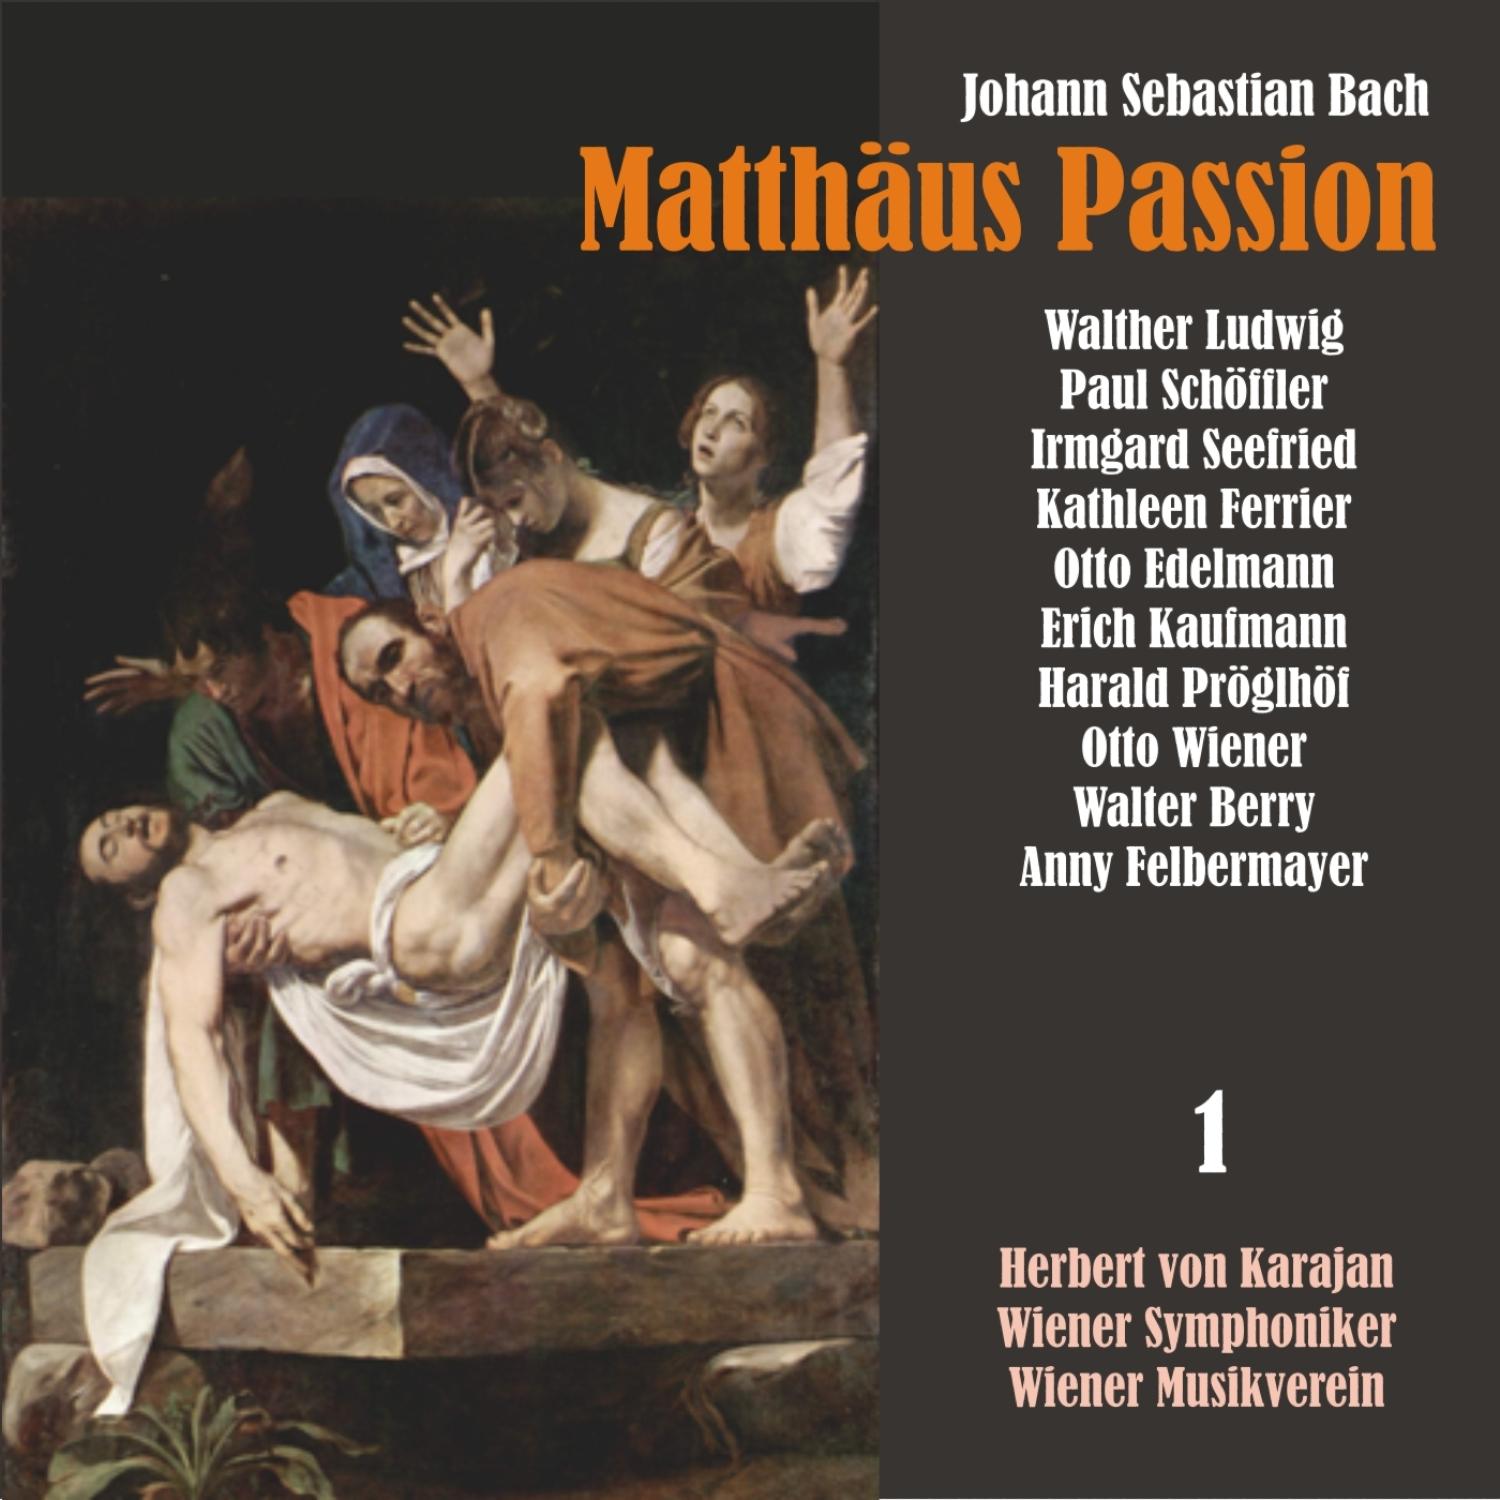 Matthäus Passion, BWV 244: "Und da sie den Lobgesang gesprochen hatten"